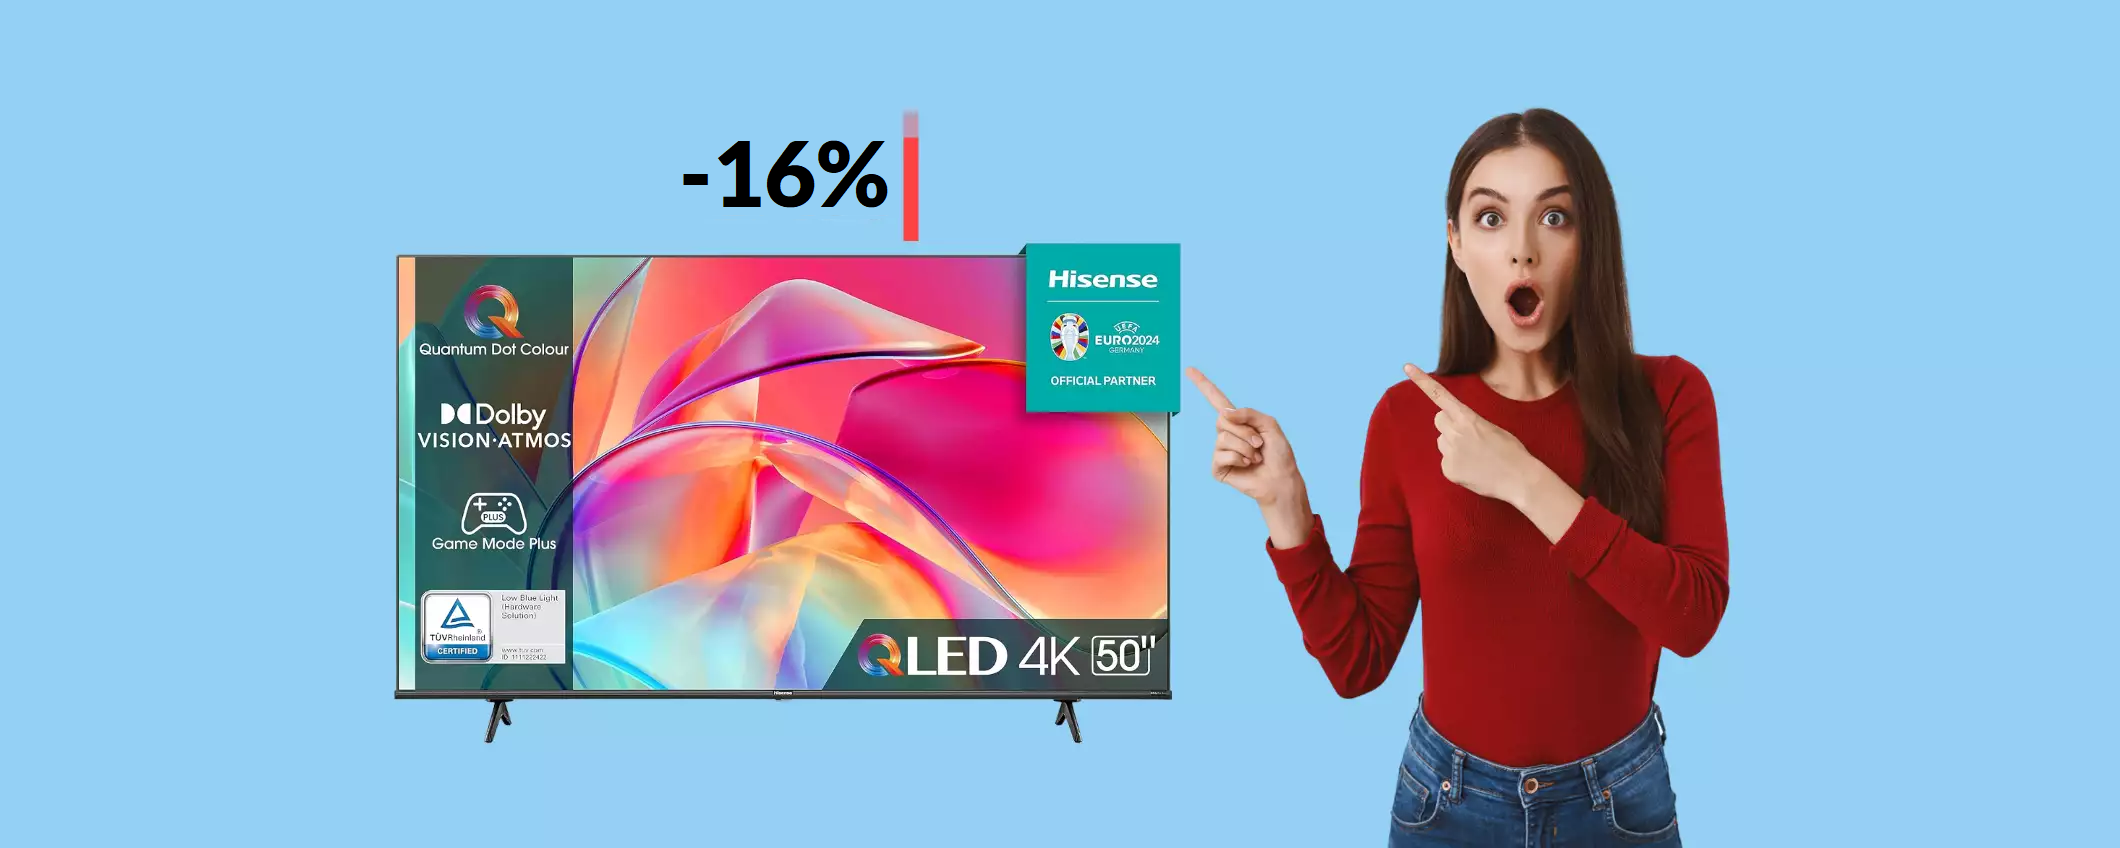 Smart TV 4K 50'' Hisense: il prezzo non smette di scendere (359€)